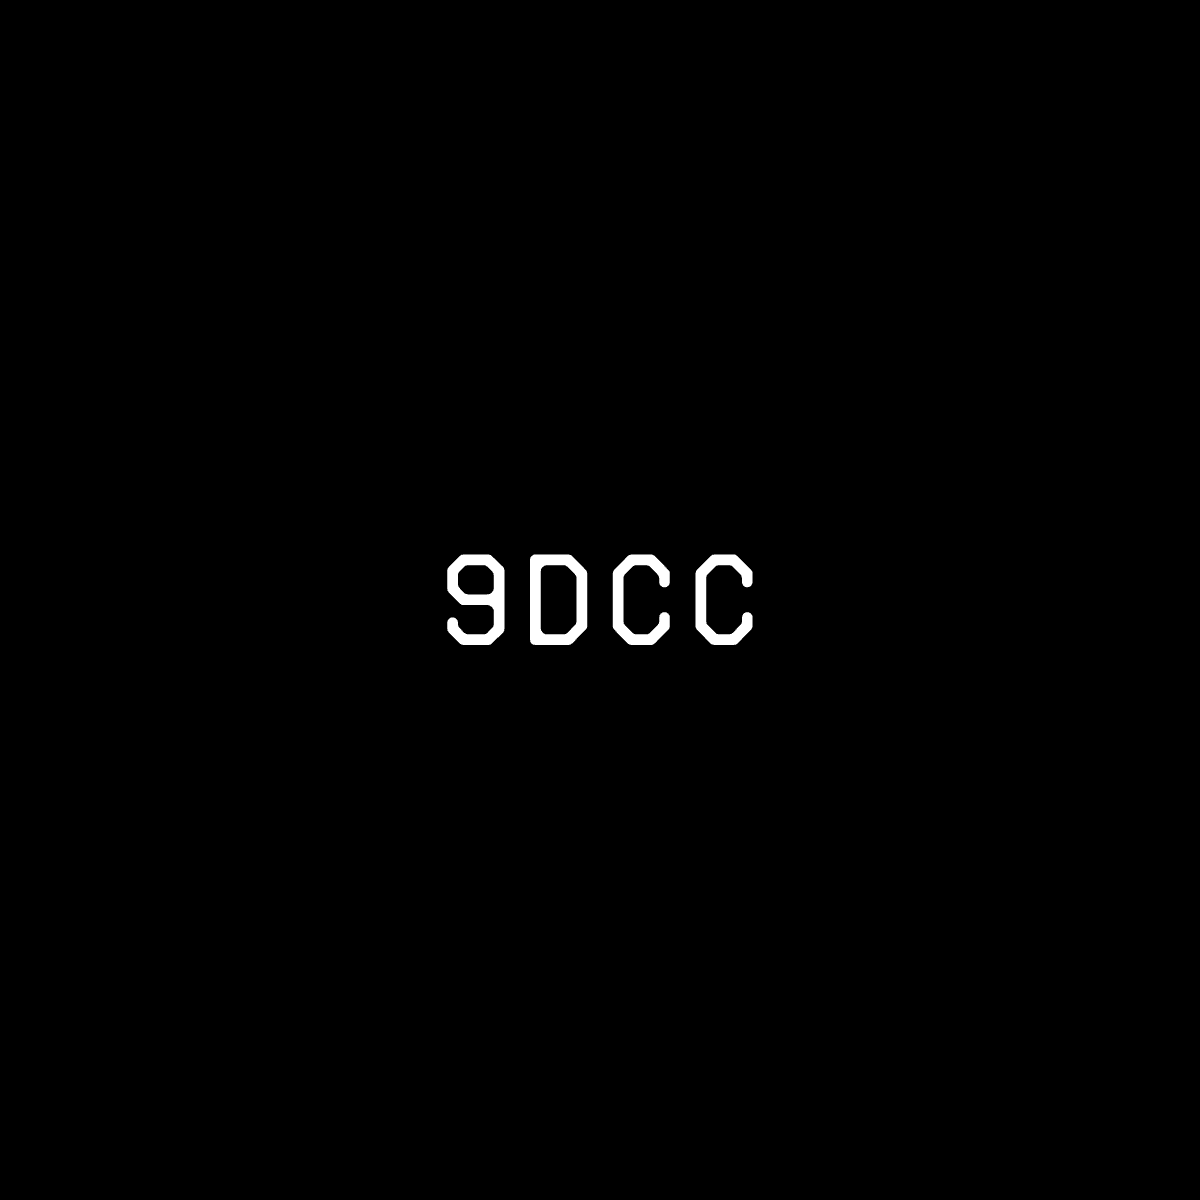 9dcc